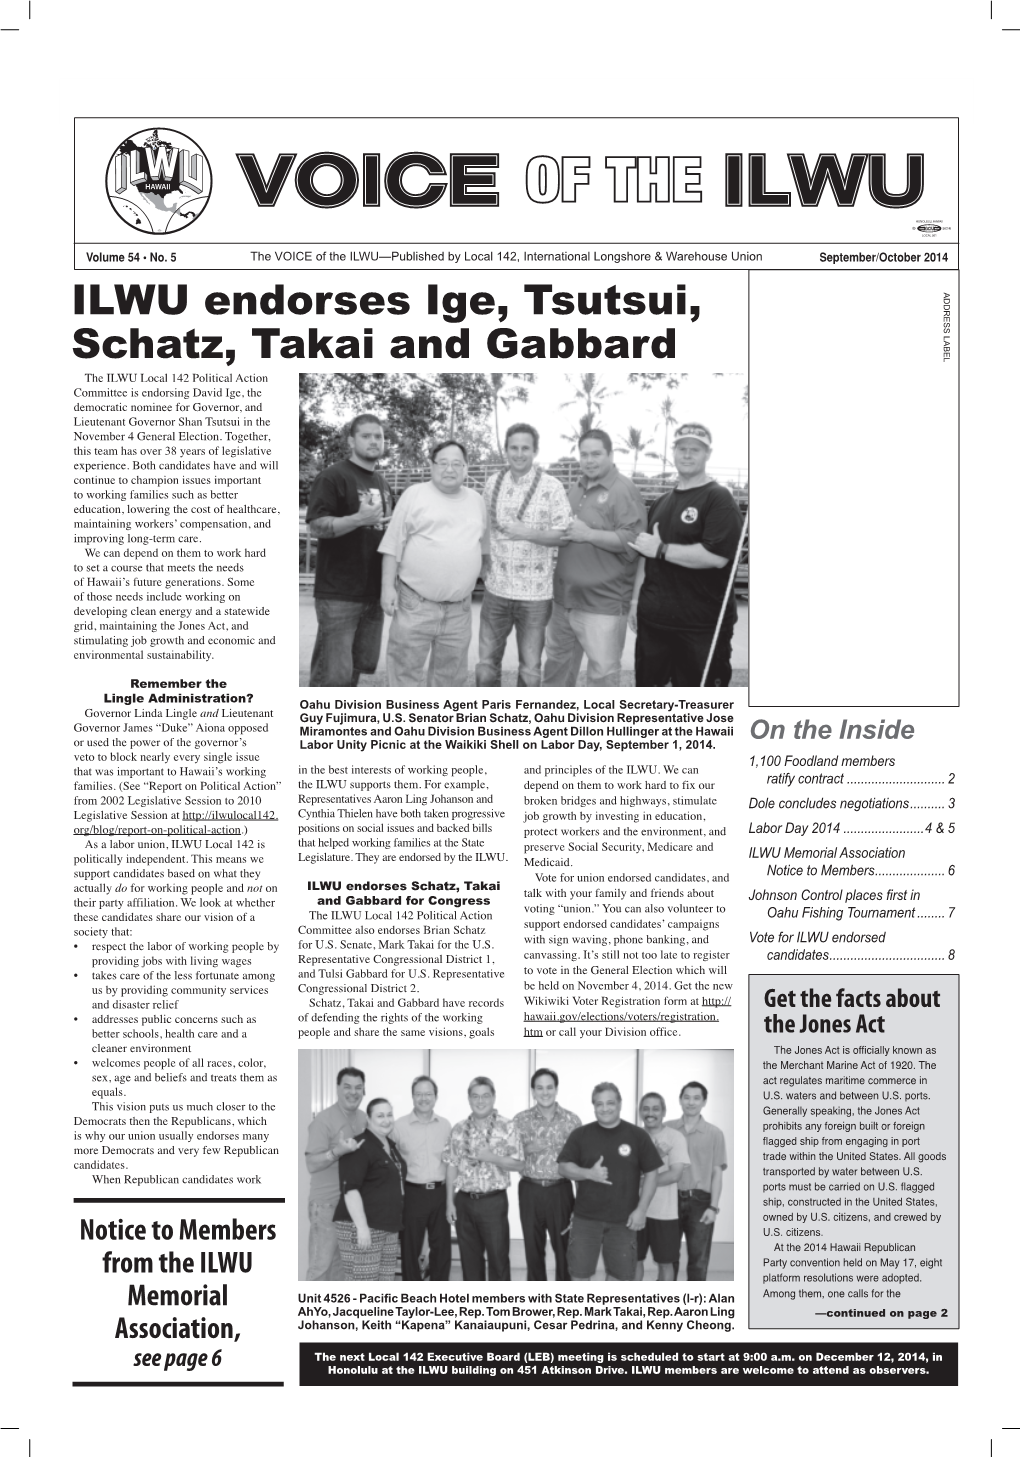 ILWU Endorses Ige, Tsutsui, Schatz, Takai and Gabbard